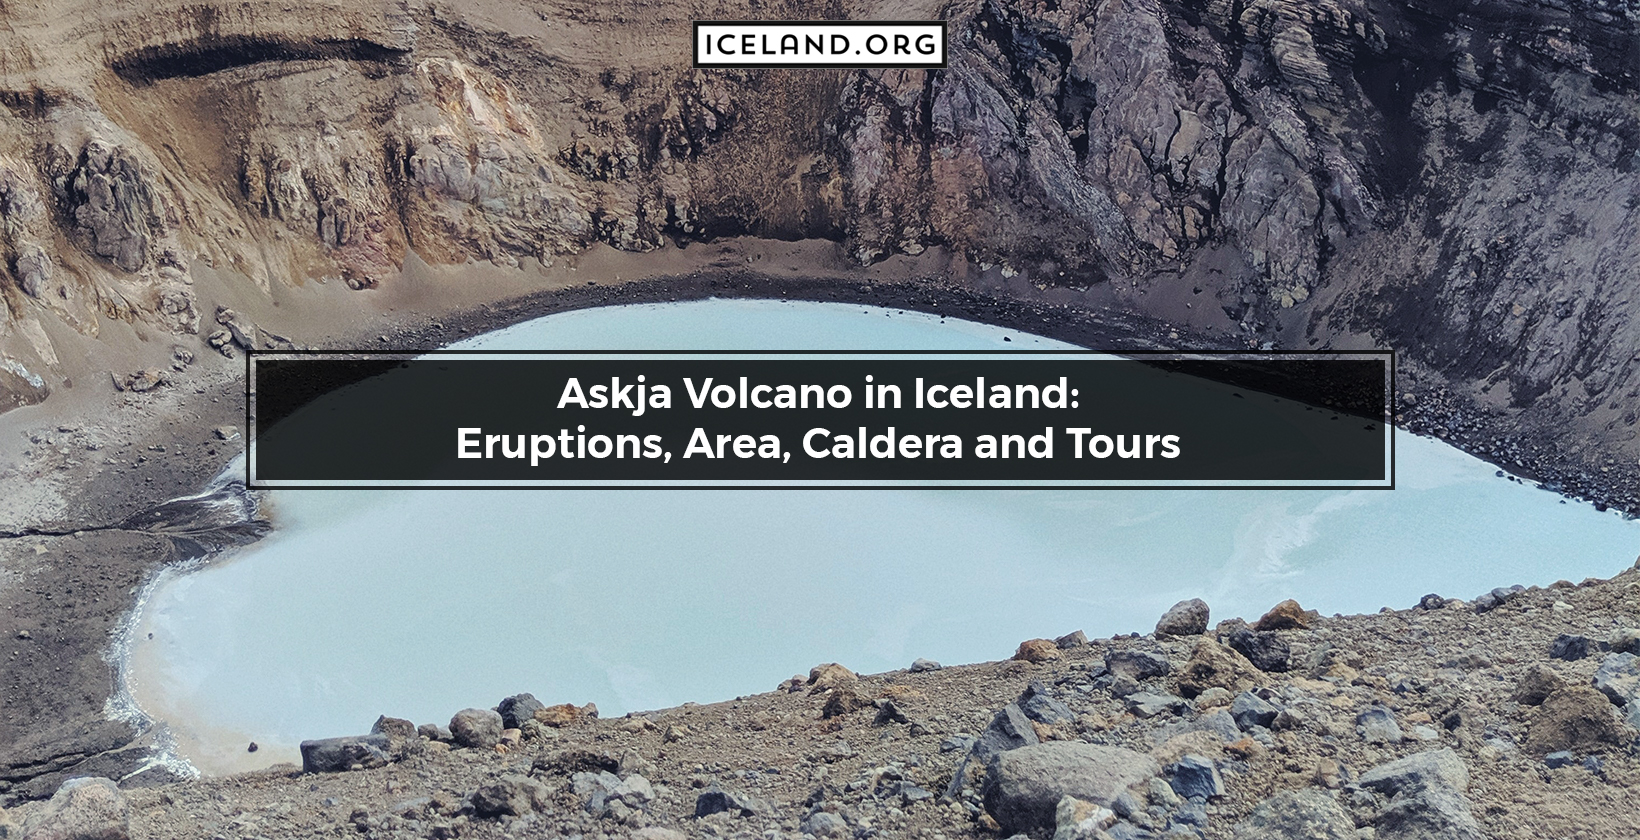 Askja Volcano in Iceland